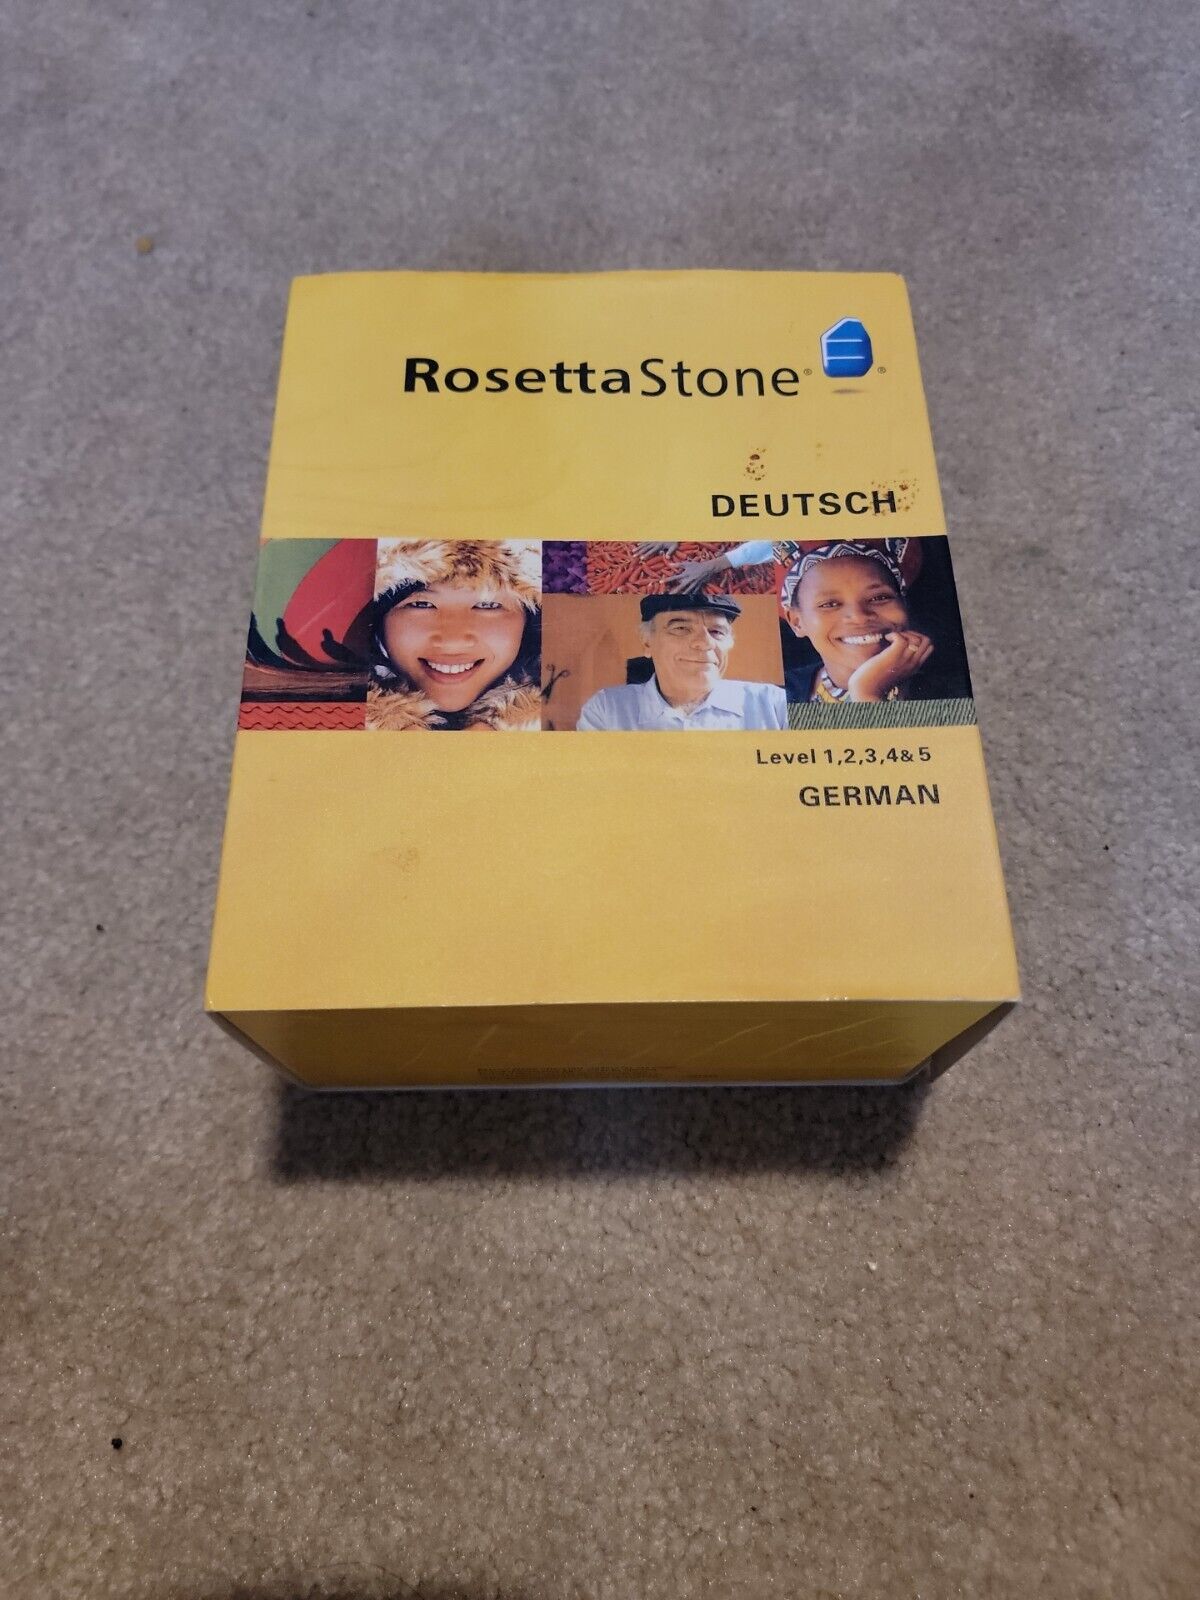 Rosetta Stone German Deutsch Ver 3 Complete Levels 1-5 Box Has Wear